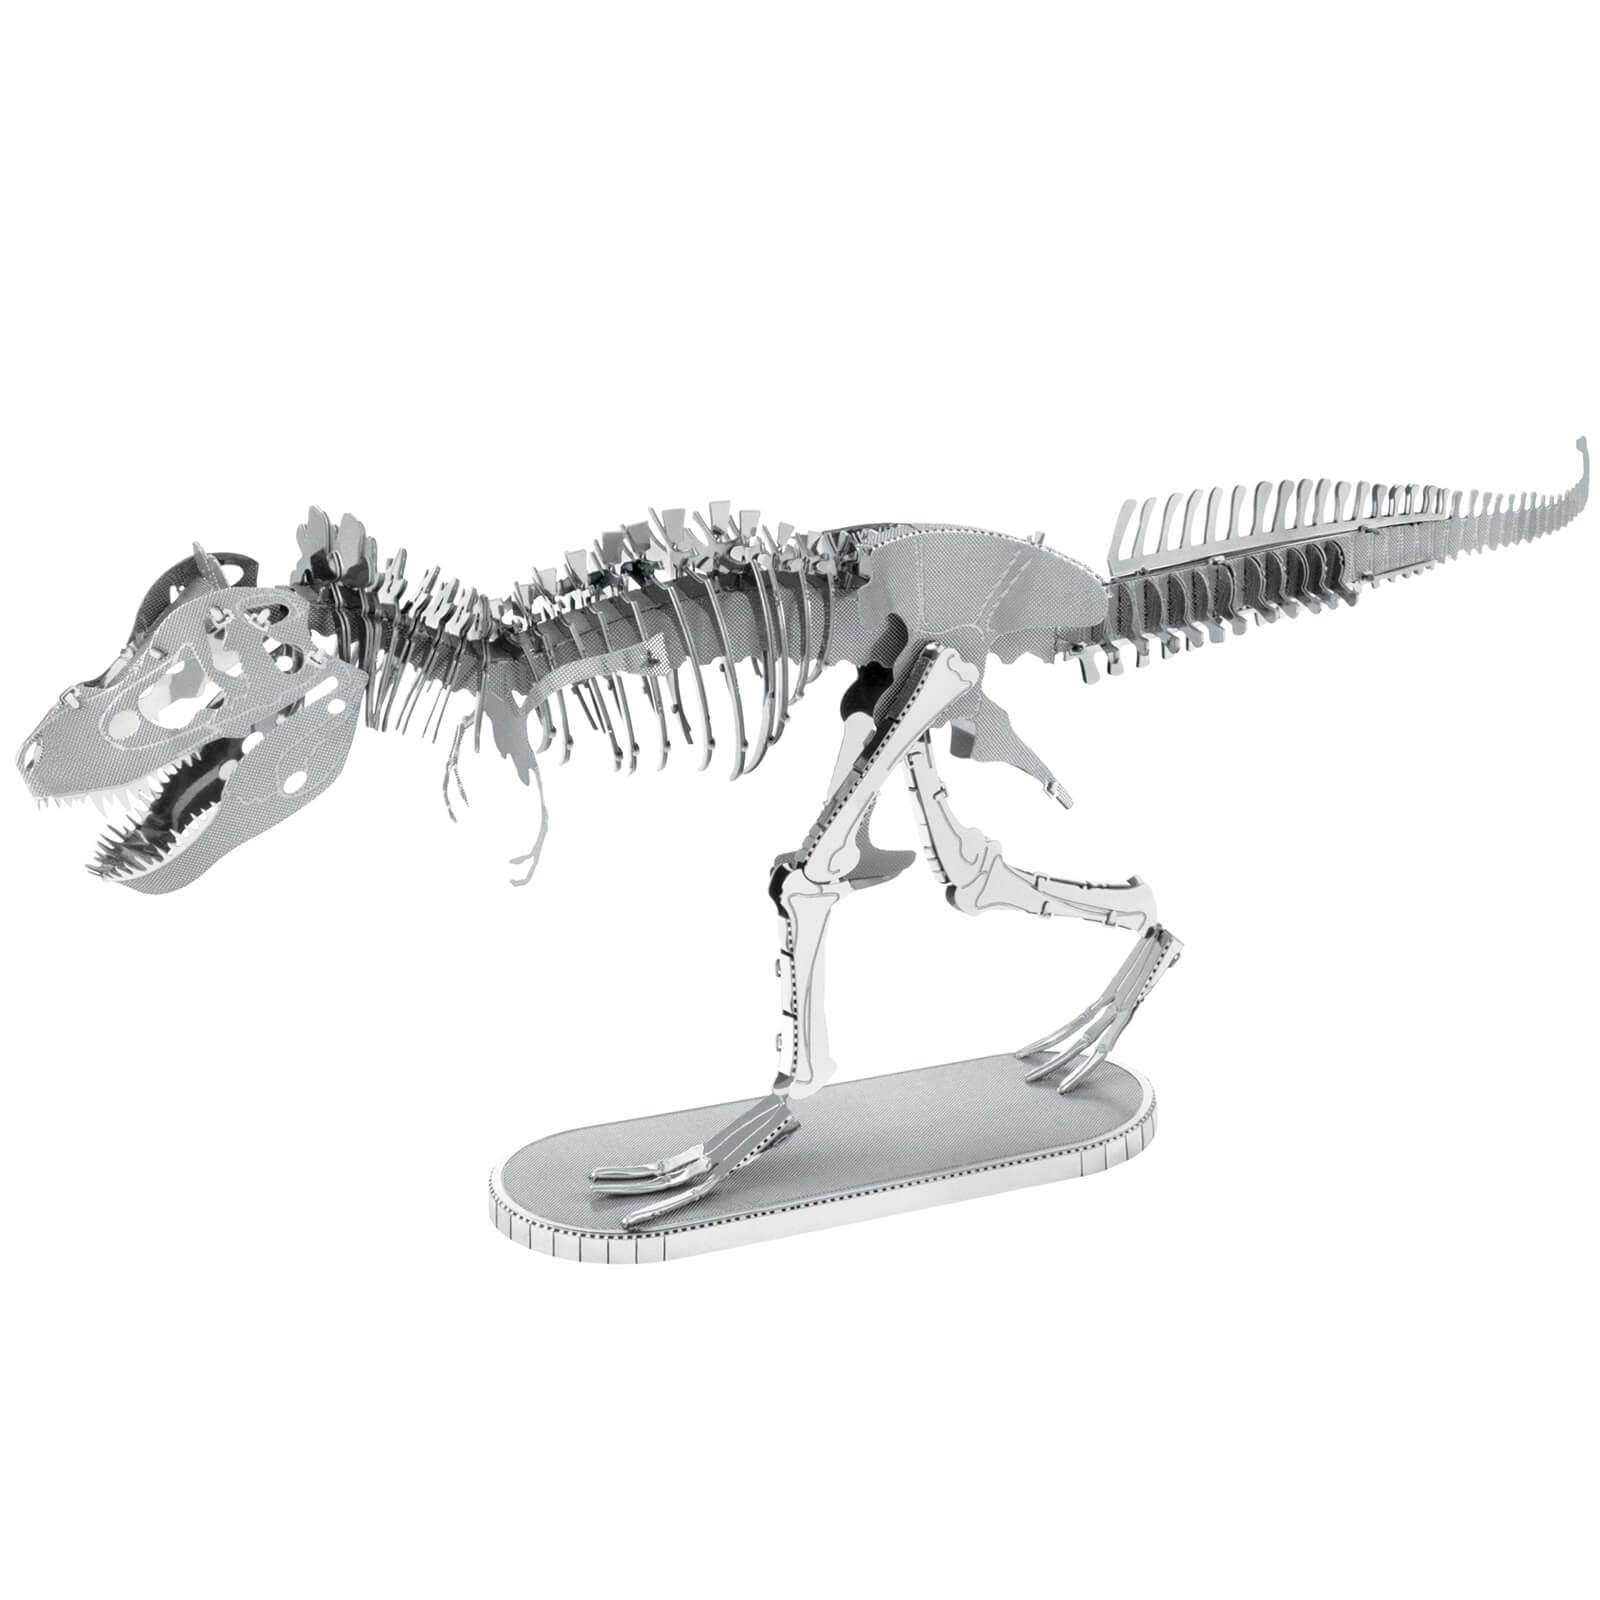 Fascinations Metal Earth 3D Metal Model Kit - Tyrannosaurus Rex